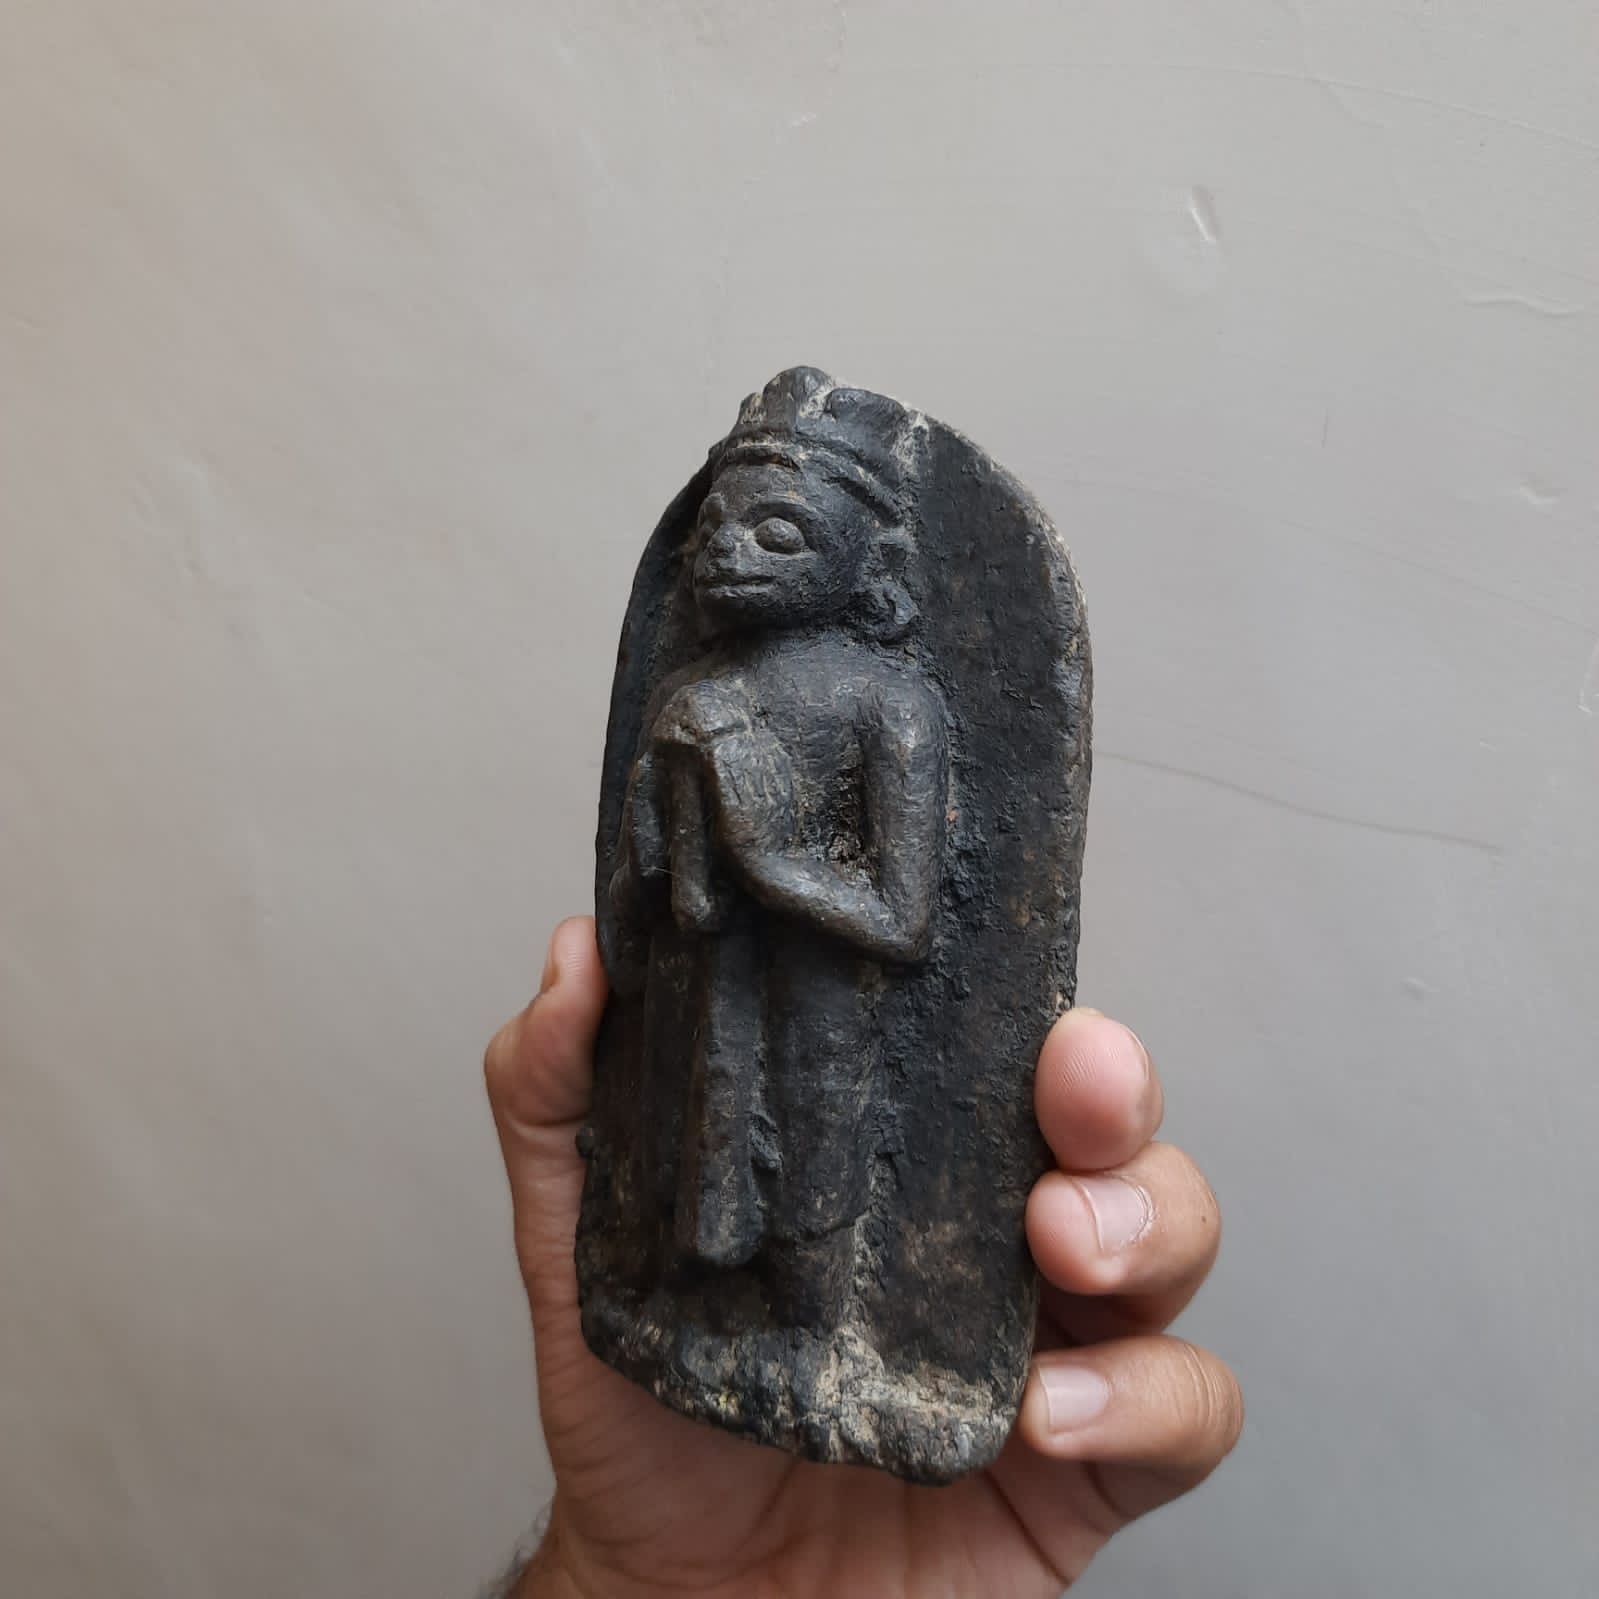 Vintage Lord Hanuman Stone Sculpture, Vintage sculpture, hanuman ji, Lord Hanuman - KhatiJi